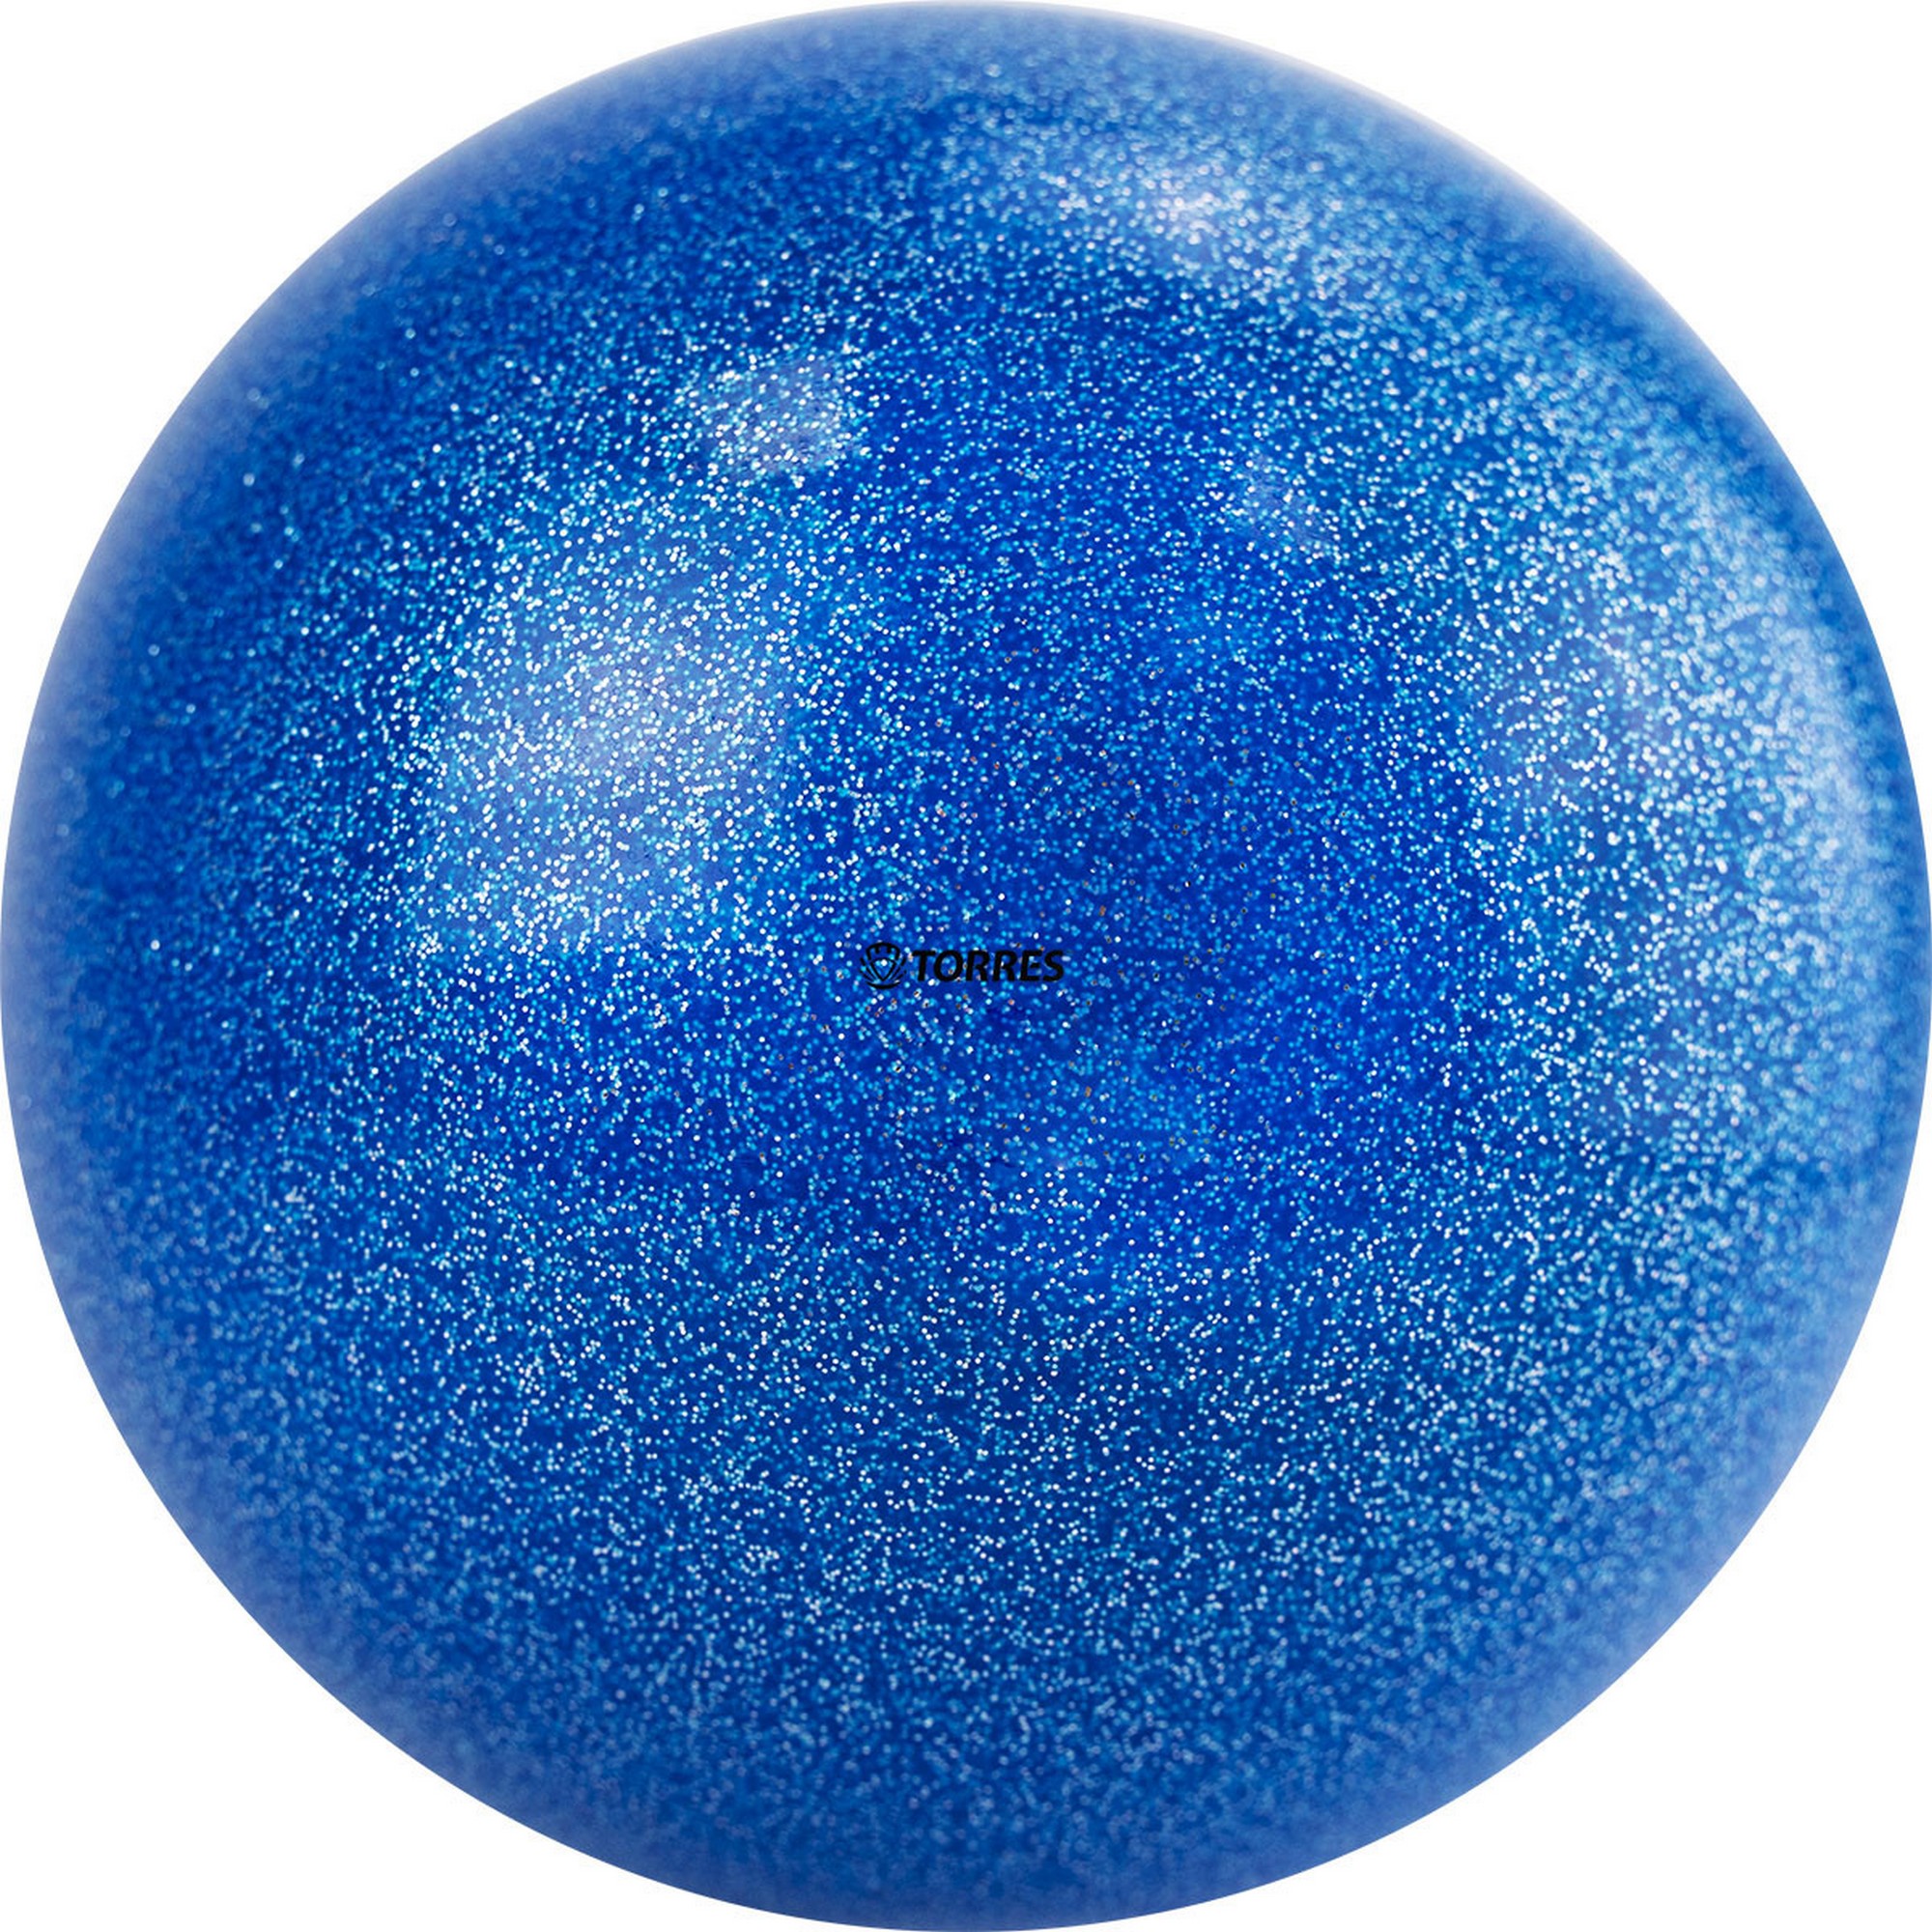 Мяч для художественной гимнастики d19см Torres ПВХ AGP-19-02 синий с блестками 2000_2000